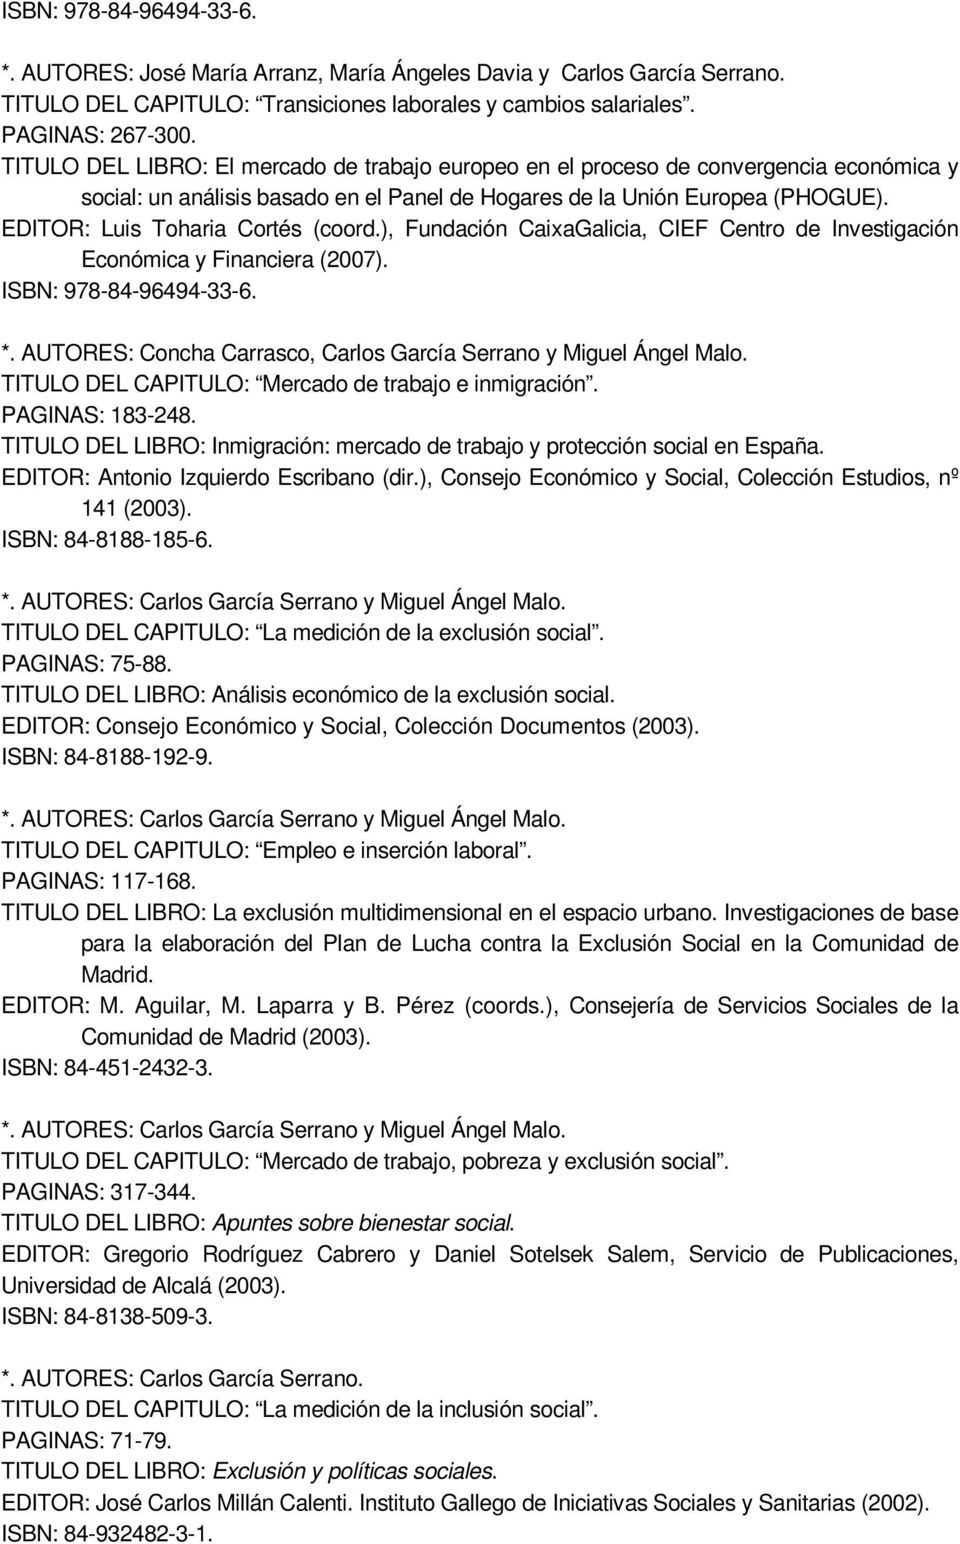 TITULO DEL LIBRO: Inmigración: mercado de trabajo y protección social en España. EDITOR: Antonio Izquierdo Escribano (dir.), Consejo Económico y Social, Colección Estudios, nº 141 (2003).